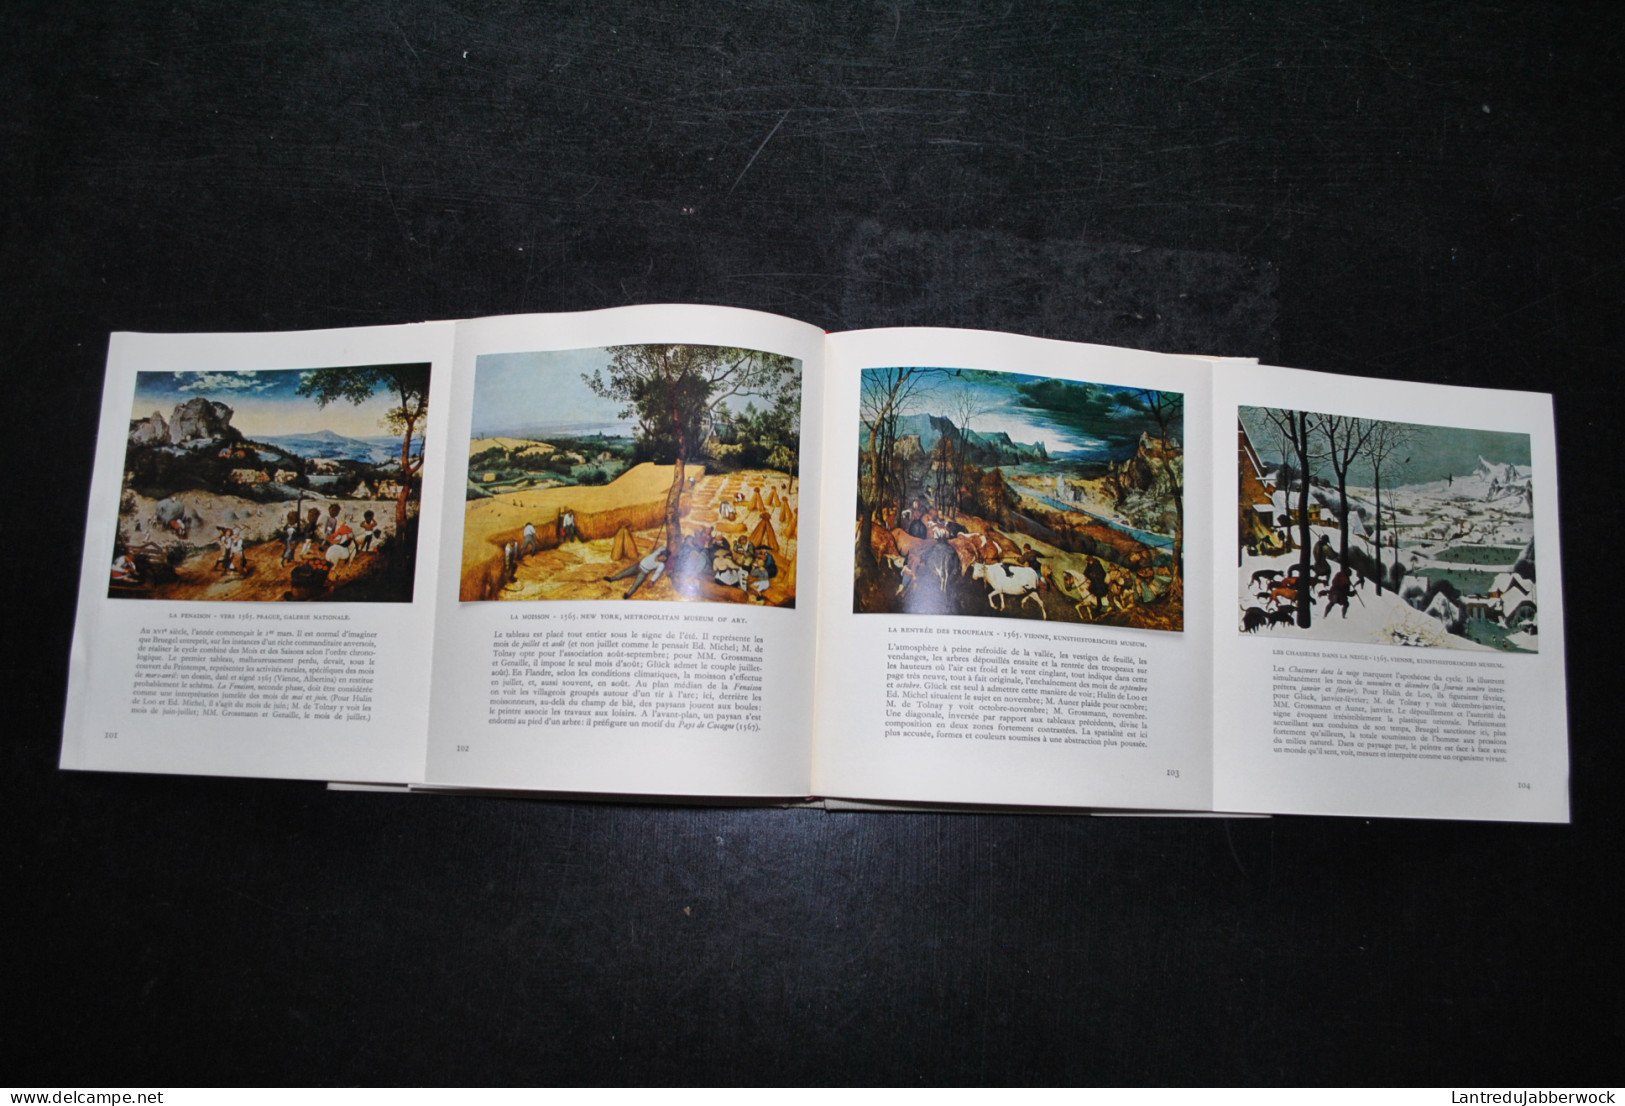 Robert DELEVOY Bruegel Skira 1959 collection Le goût de notre temps Peintre peinture art artiste images contrecollées